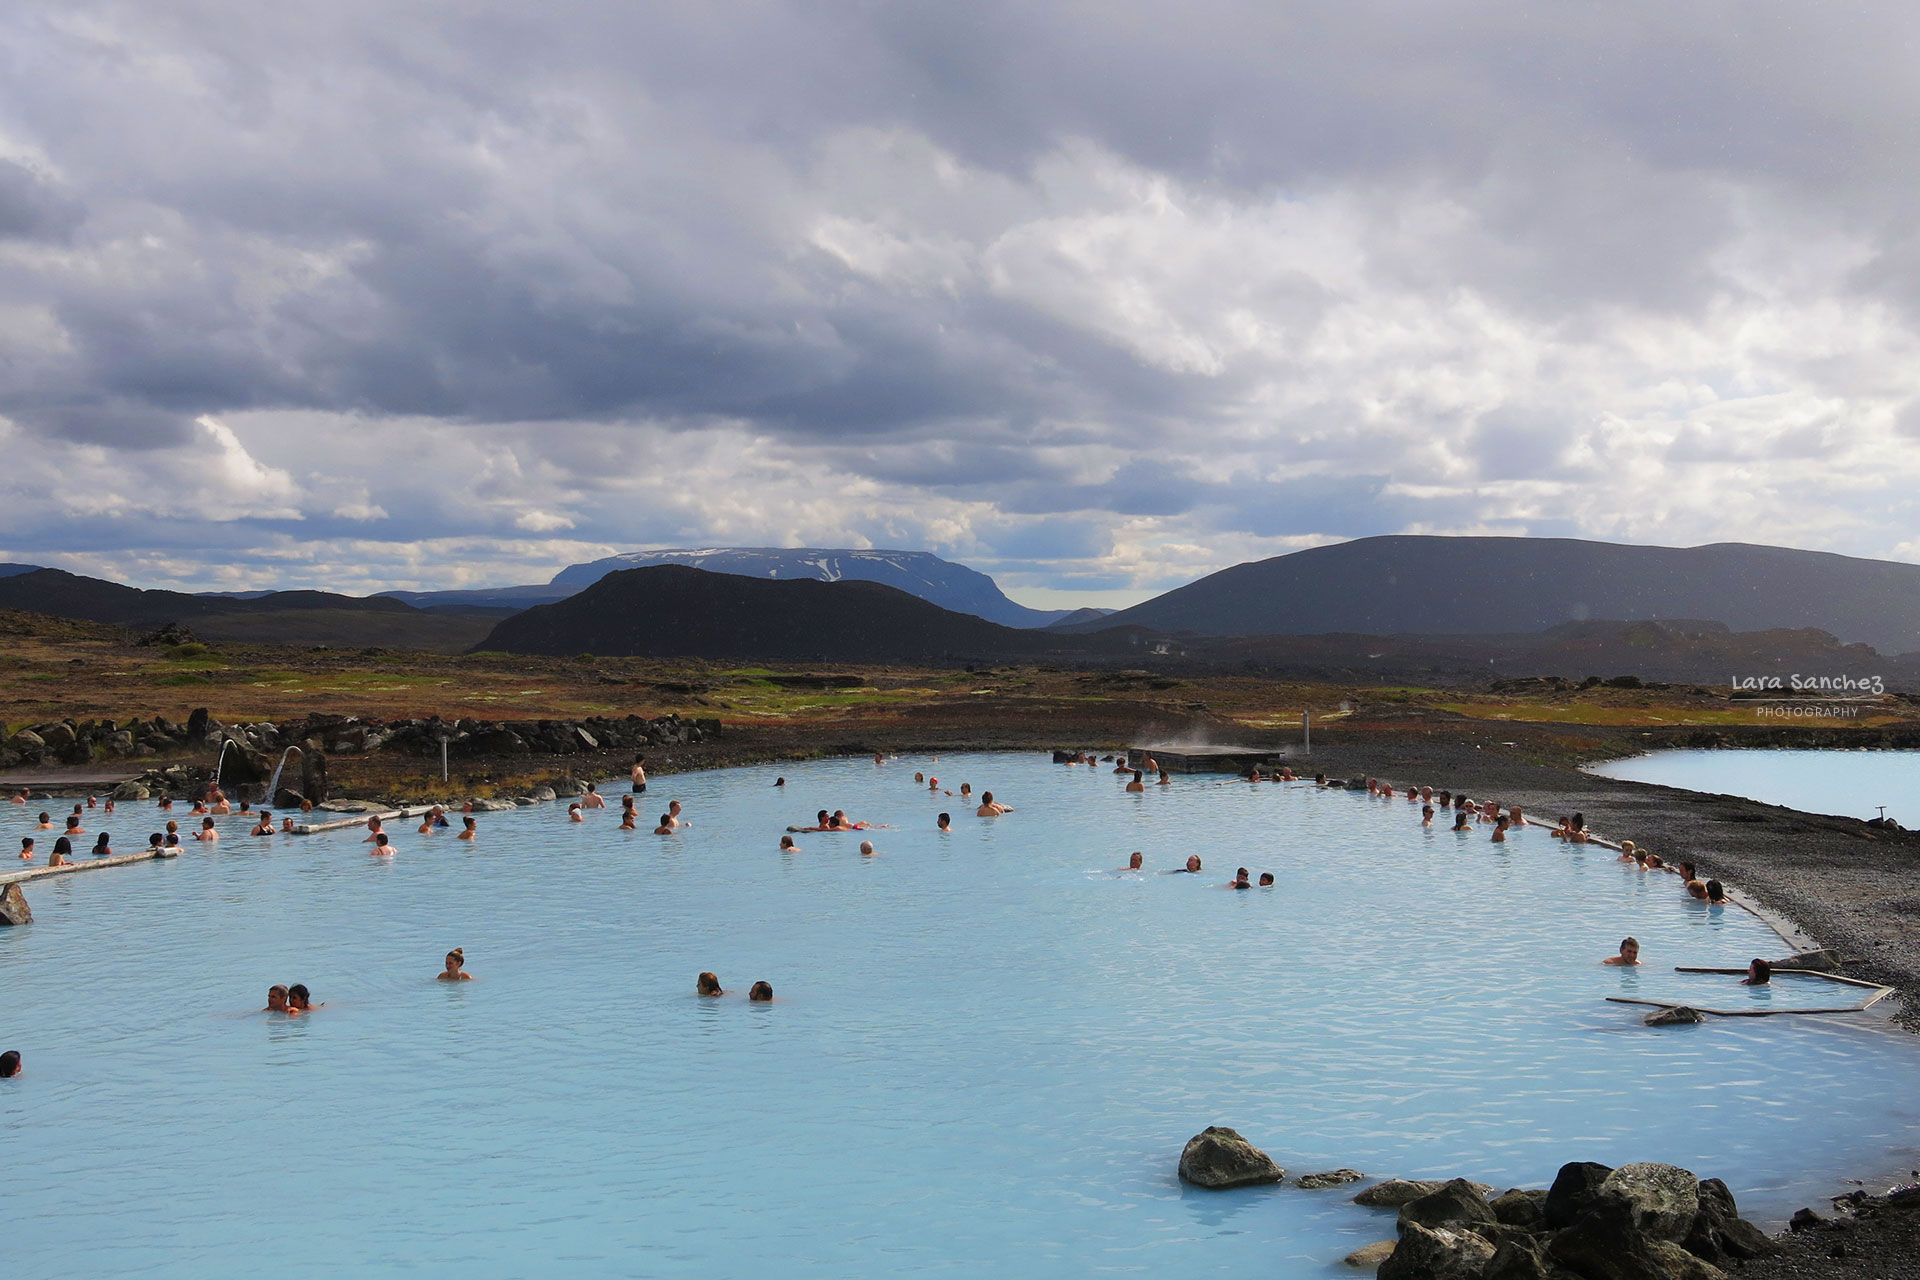 Jarðböðinn Nature Baths, Mývatn